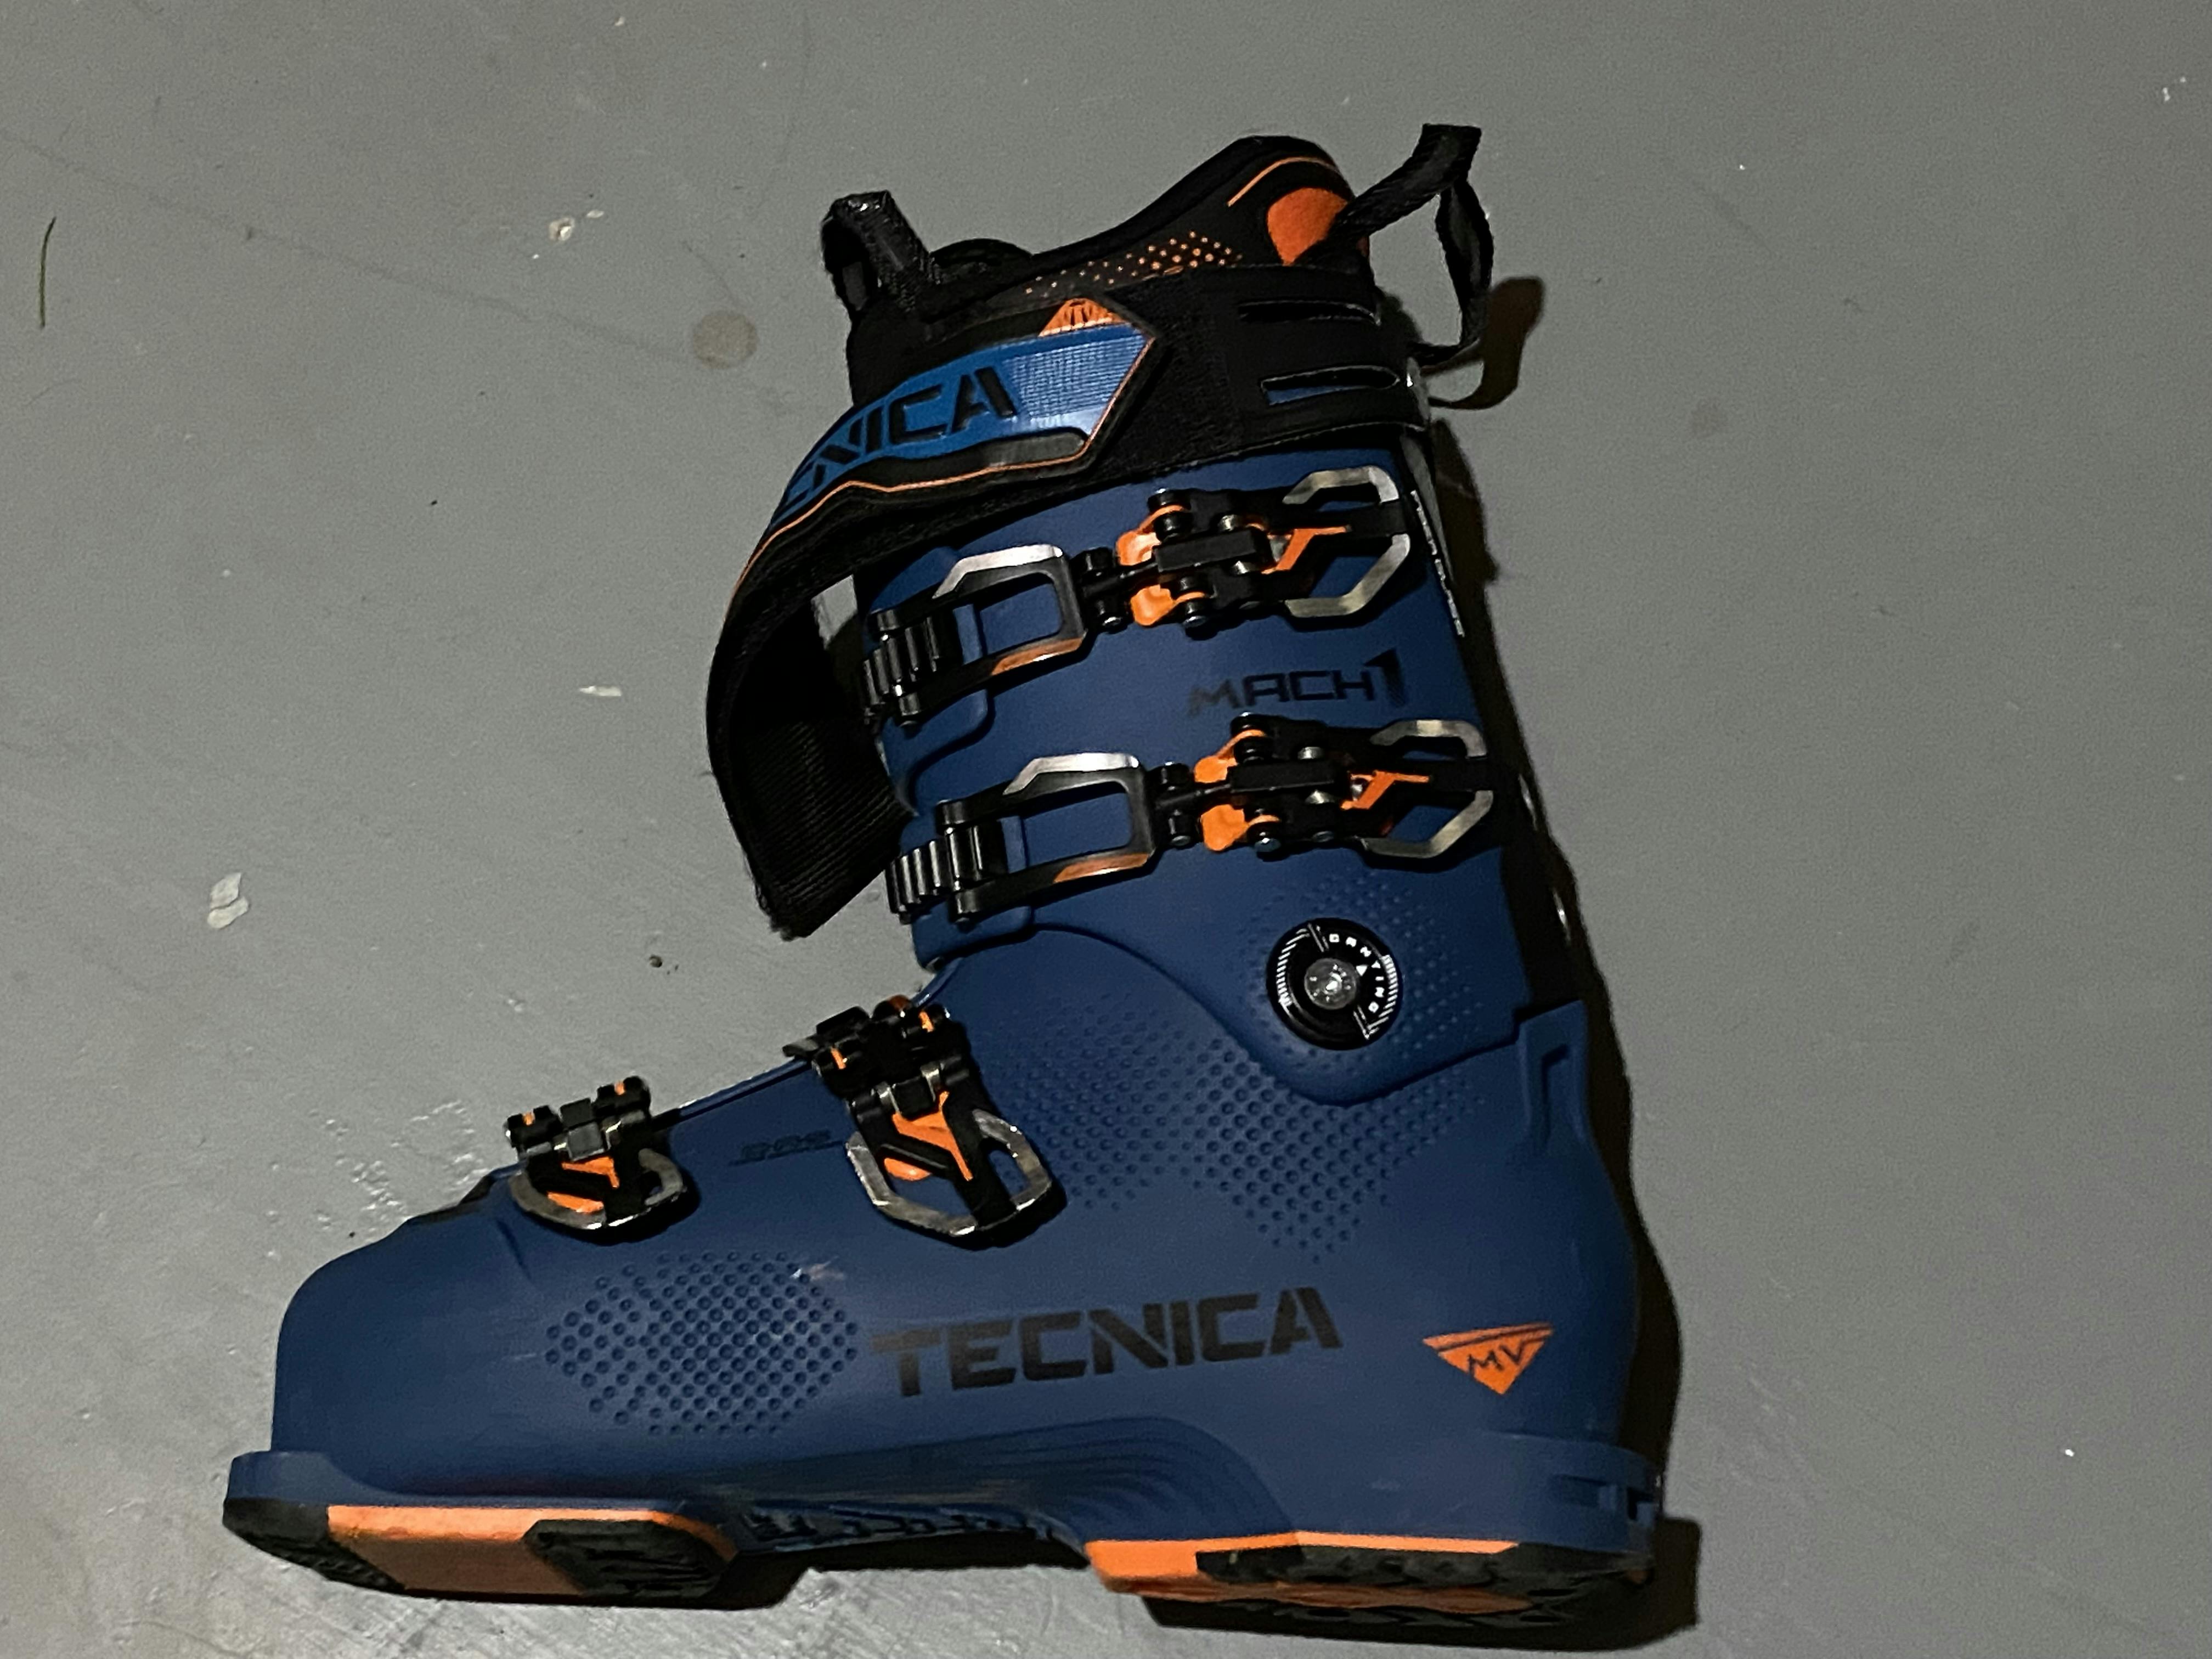 The Tecnica Mach1 LV 120 Ski Boots.